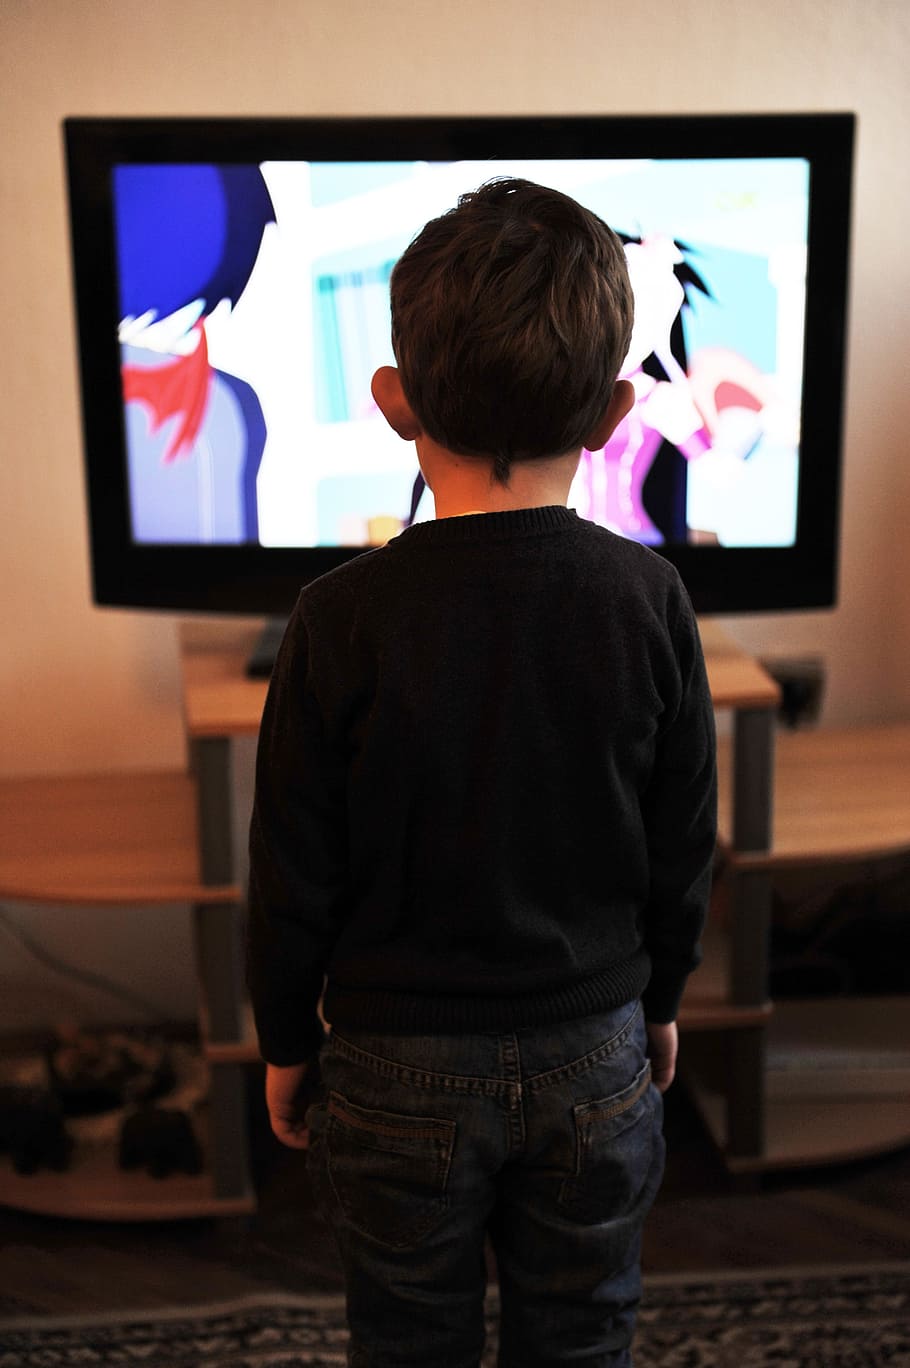 Kid, negro, suéter de cuello redondo, de pie, frontal, plano, televisión de pantalla, niños, televisión, niño